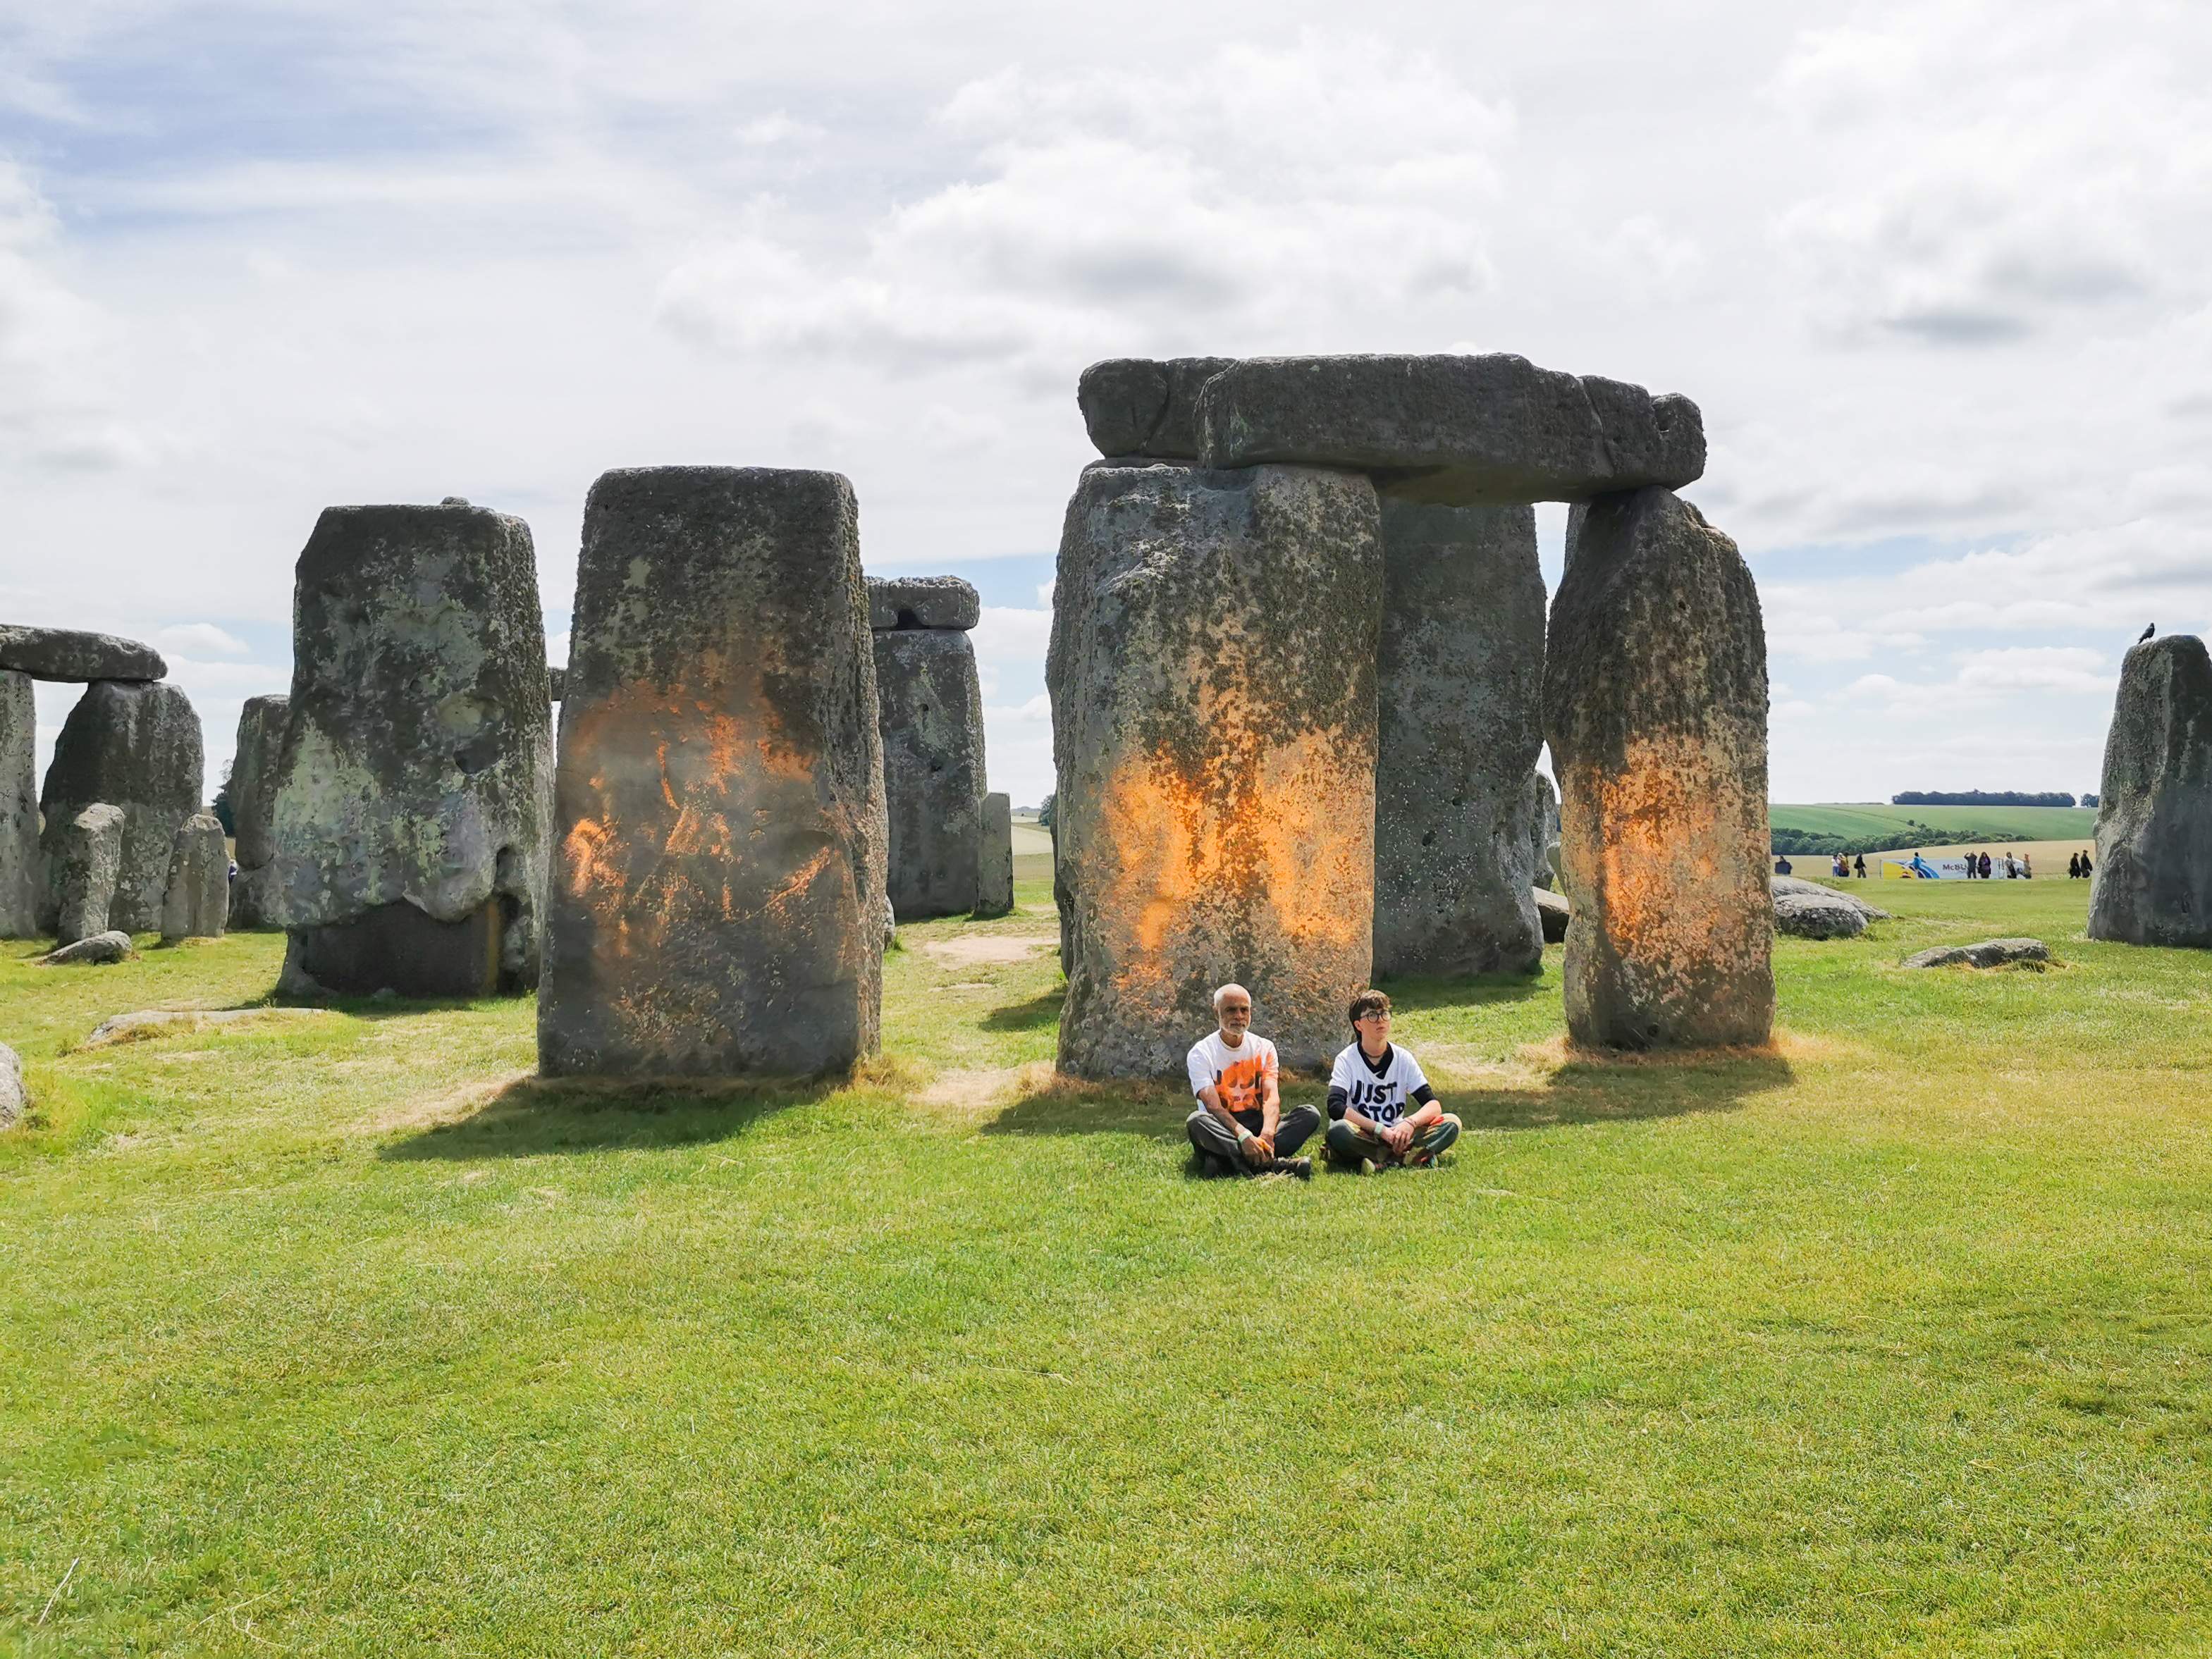 El monument neolític Stonehenge, tenyit de taronja per uns activistes ecologistes